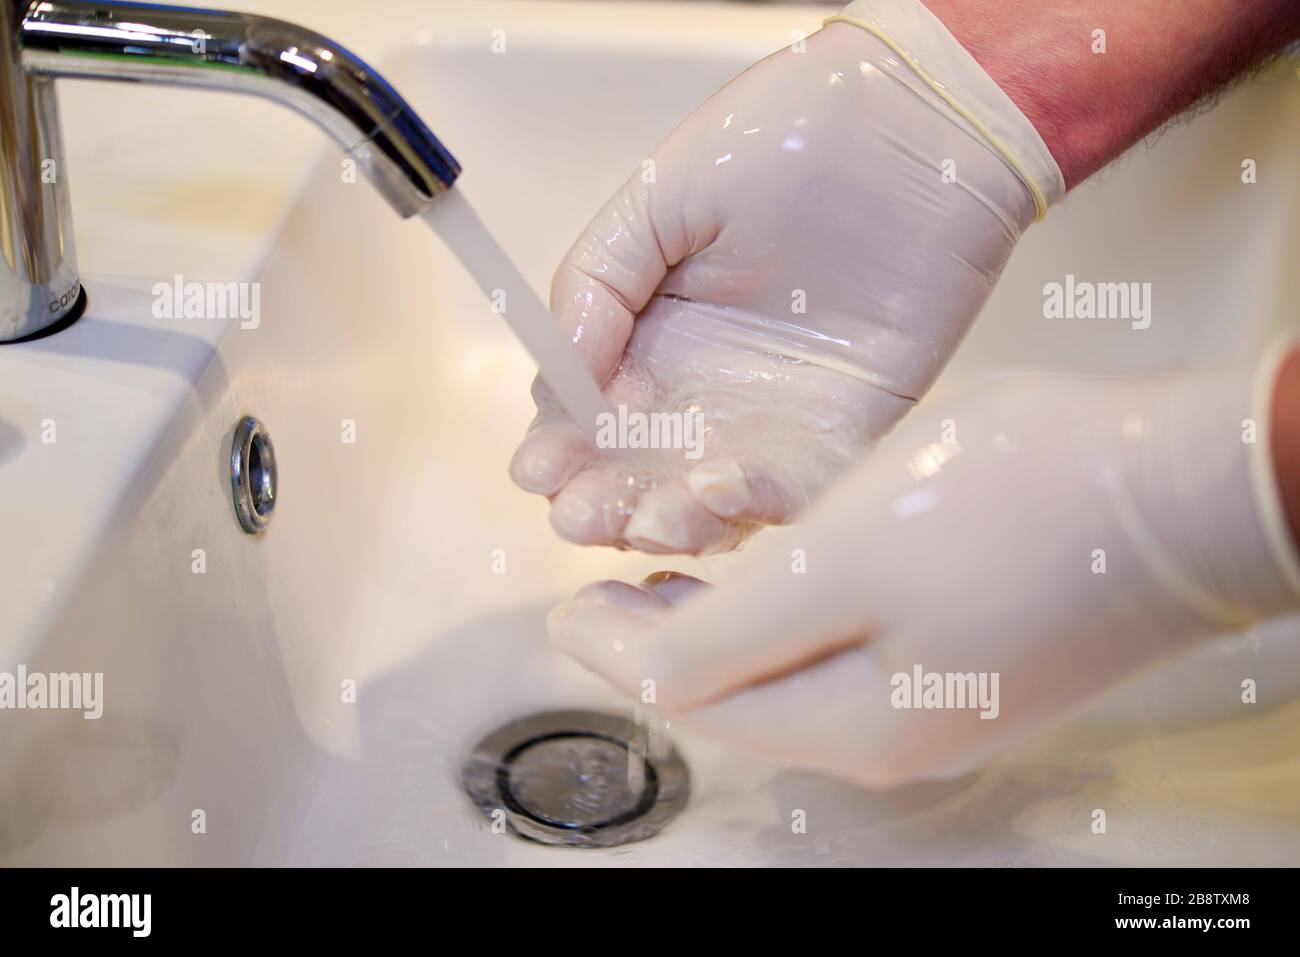 Hände regelmäßig 20 Sekunden lang waschen, um sich vor Coronavirus COVID-19 zu schützen Stockfoto